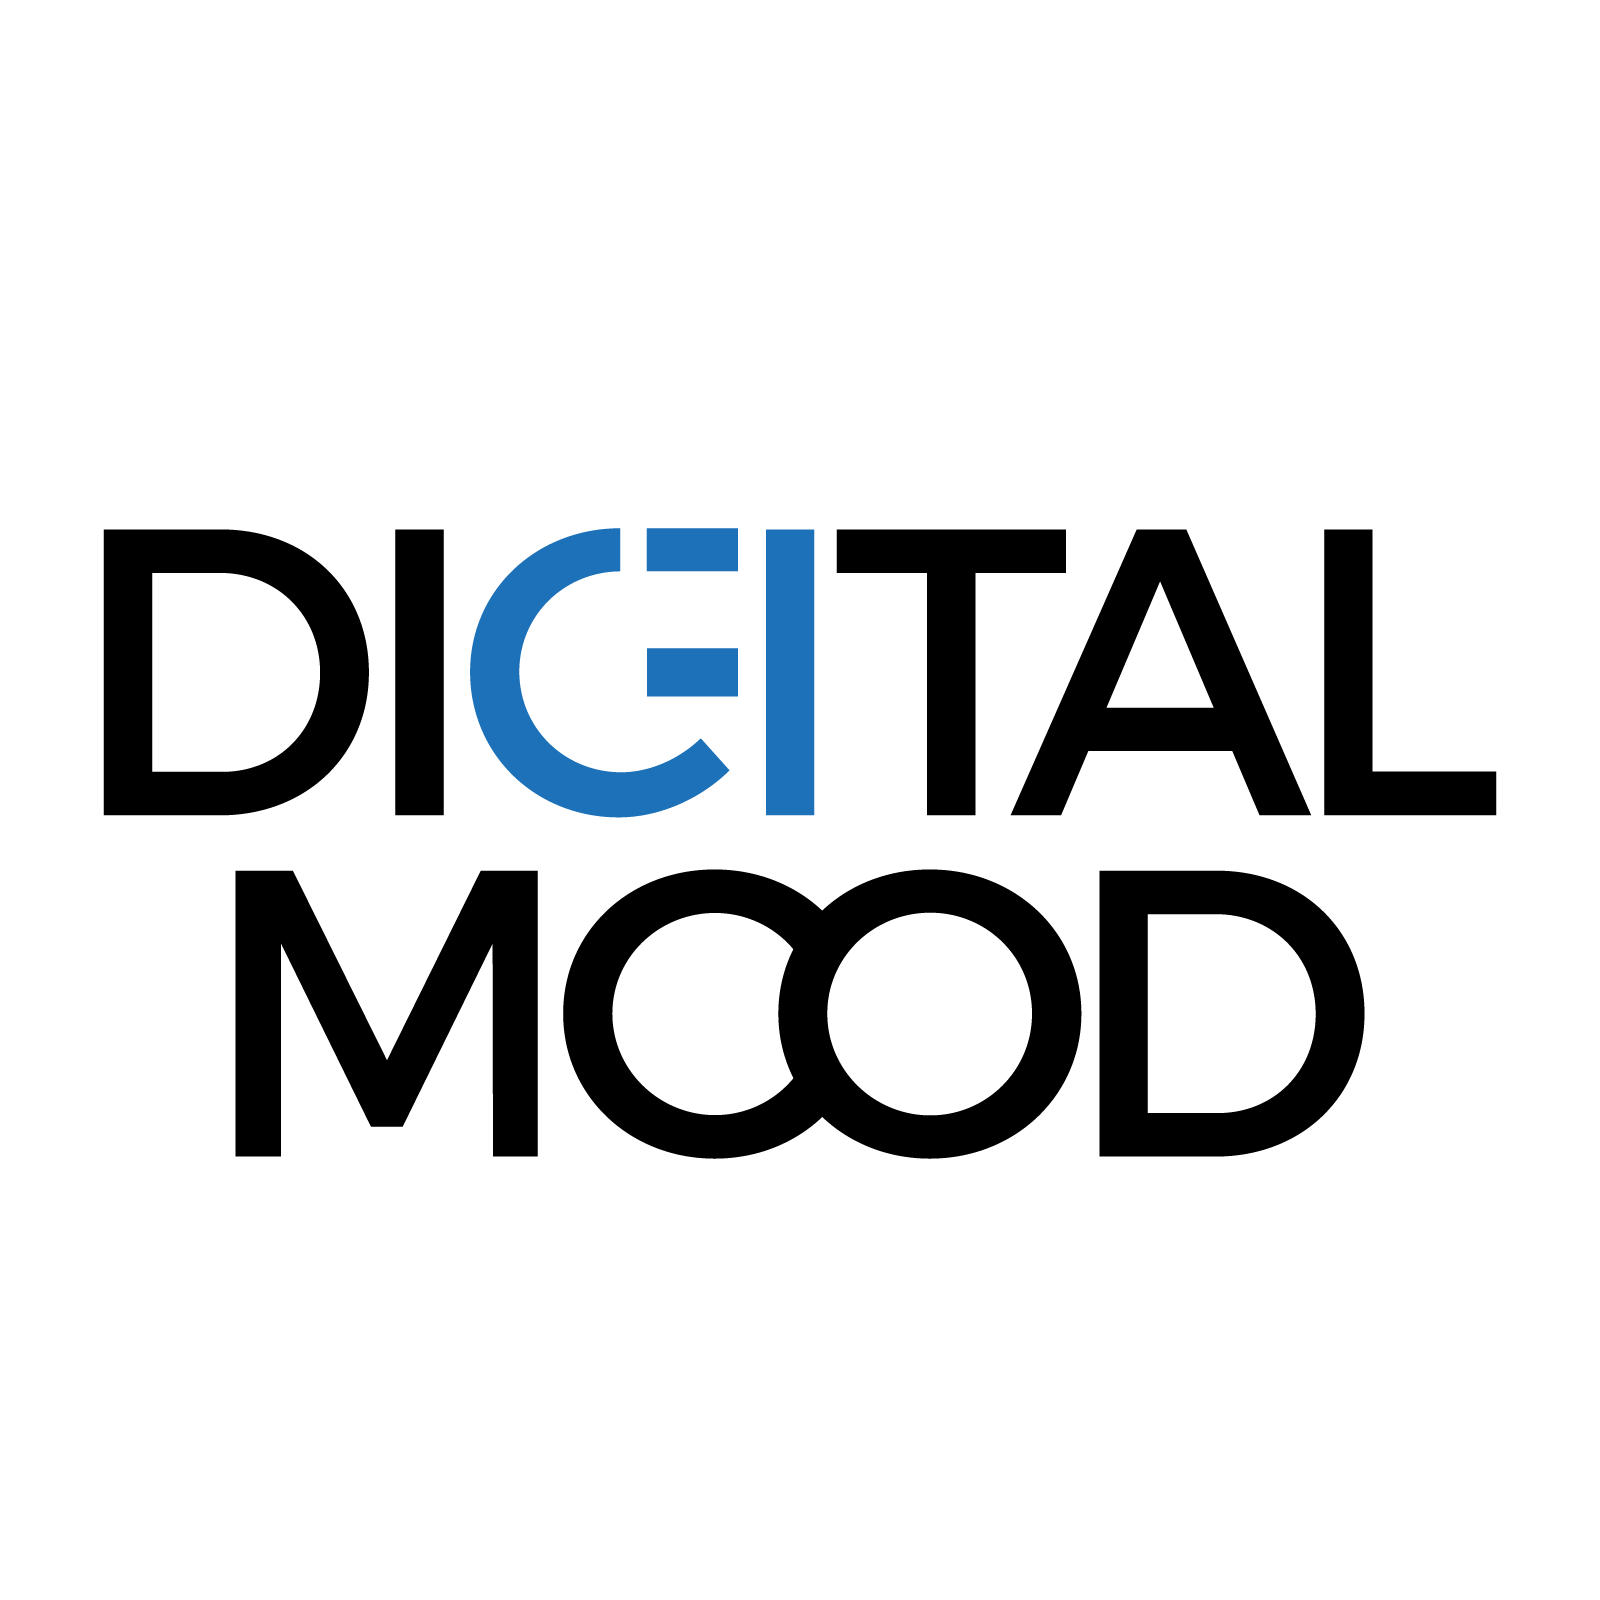 Digital Mood